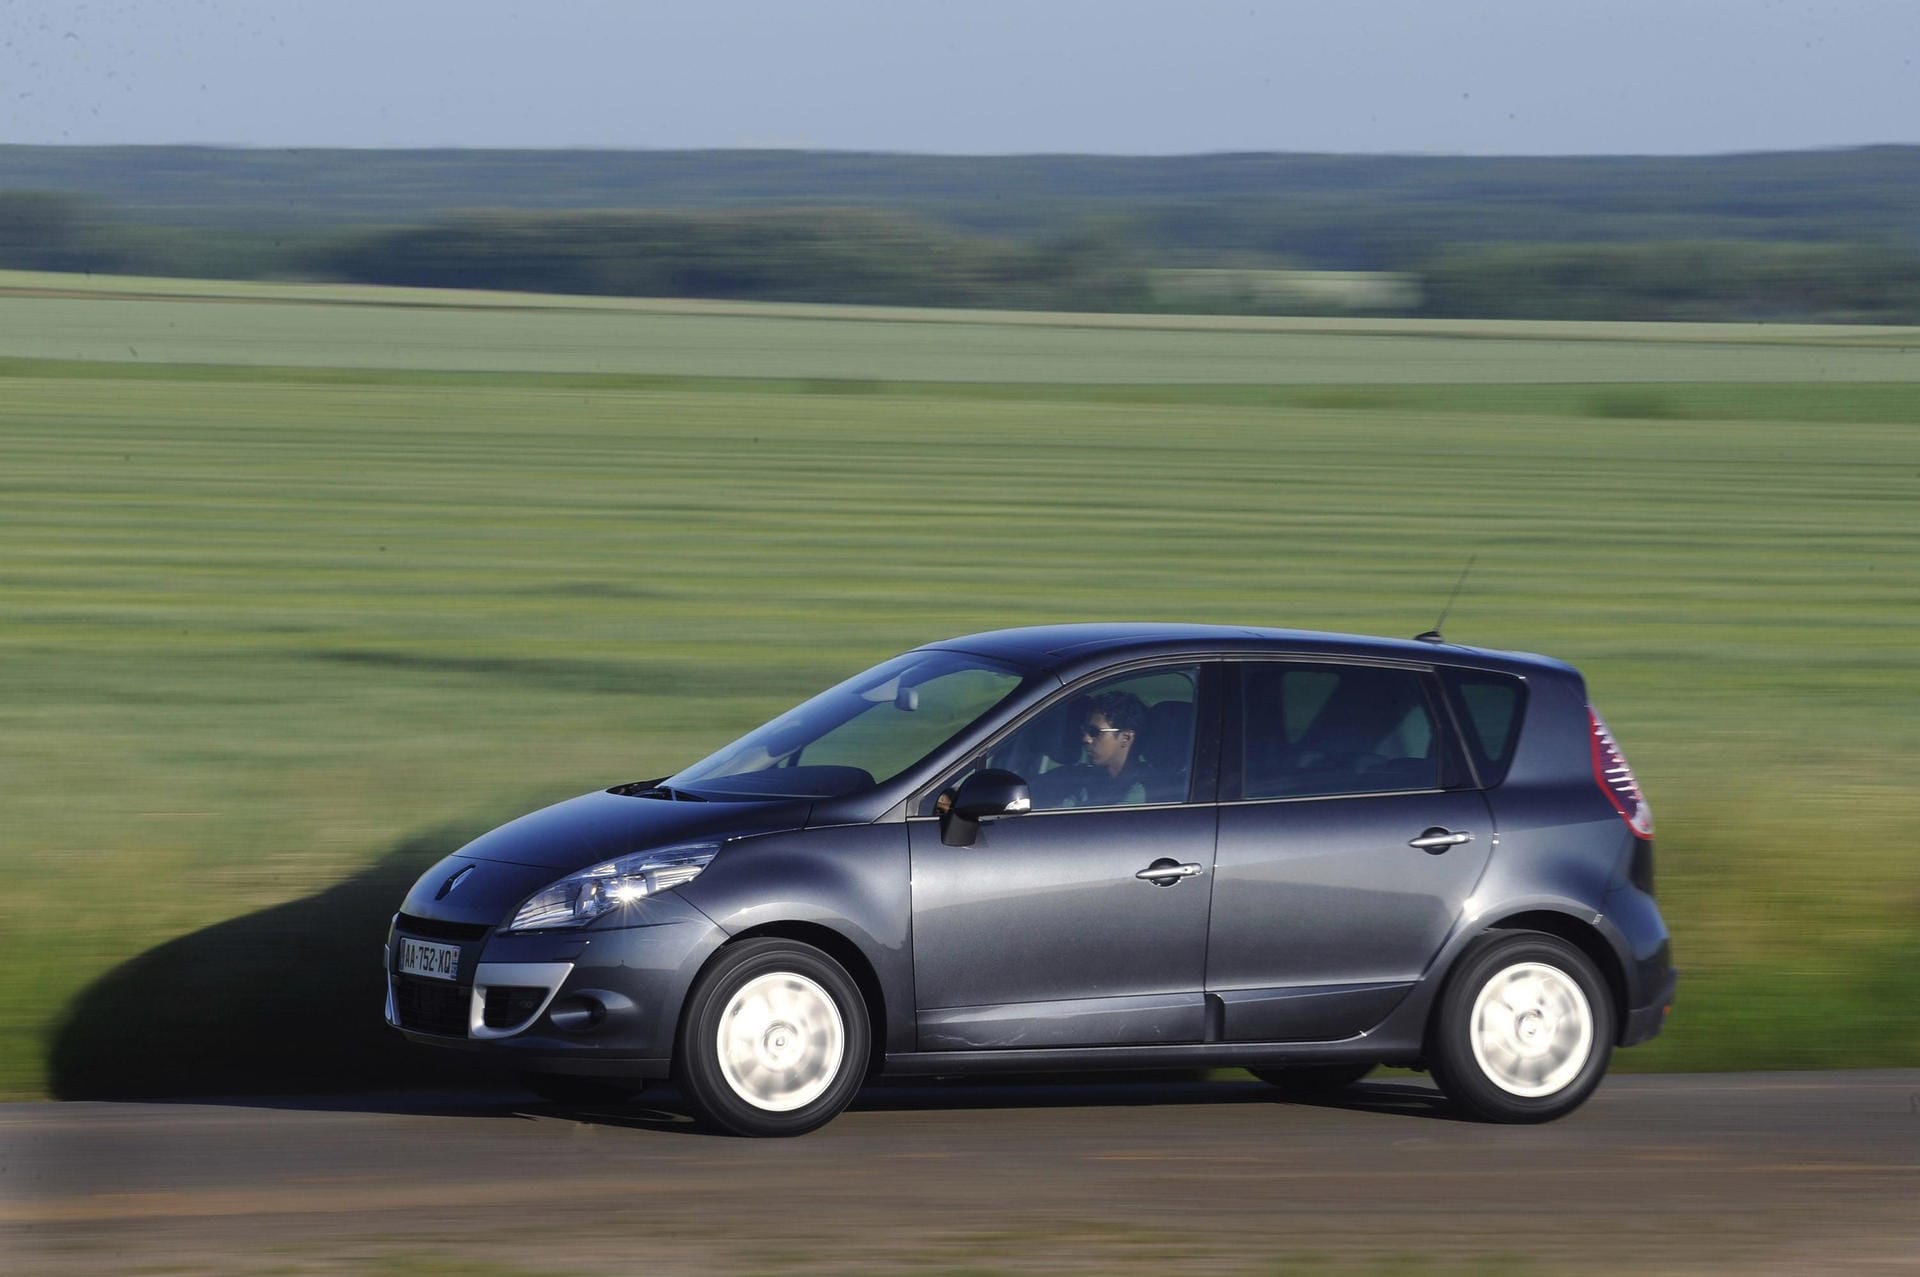 Renault Scénic: Mängelquote: 4,9. Achten Sie auch hier auf die Beleuchtung, außerdem auf die Lenkung und die Bremsanlage. Gebraucht ab 5.000 Euro.